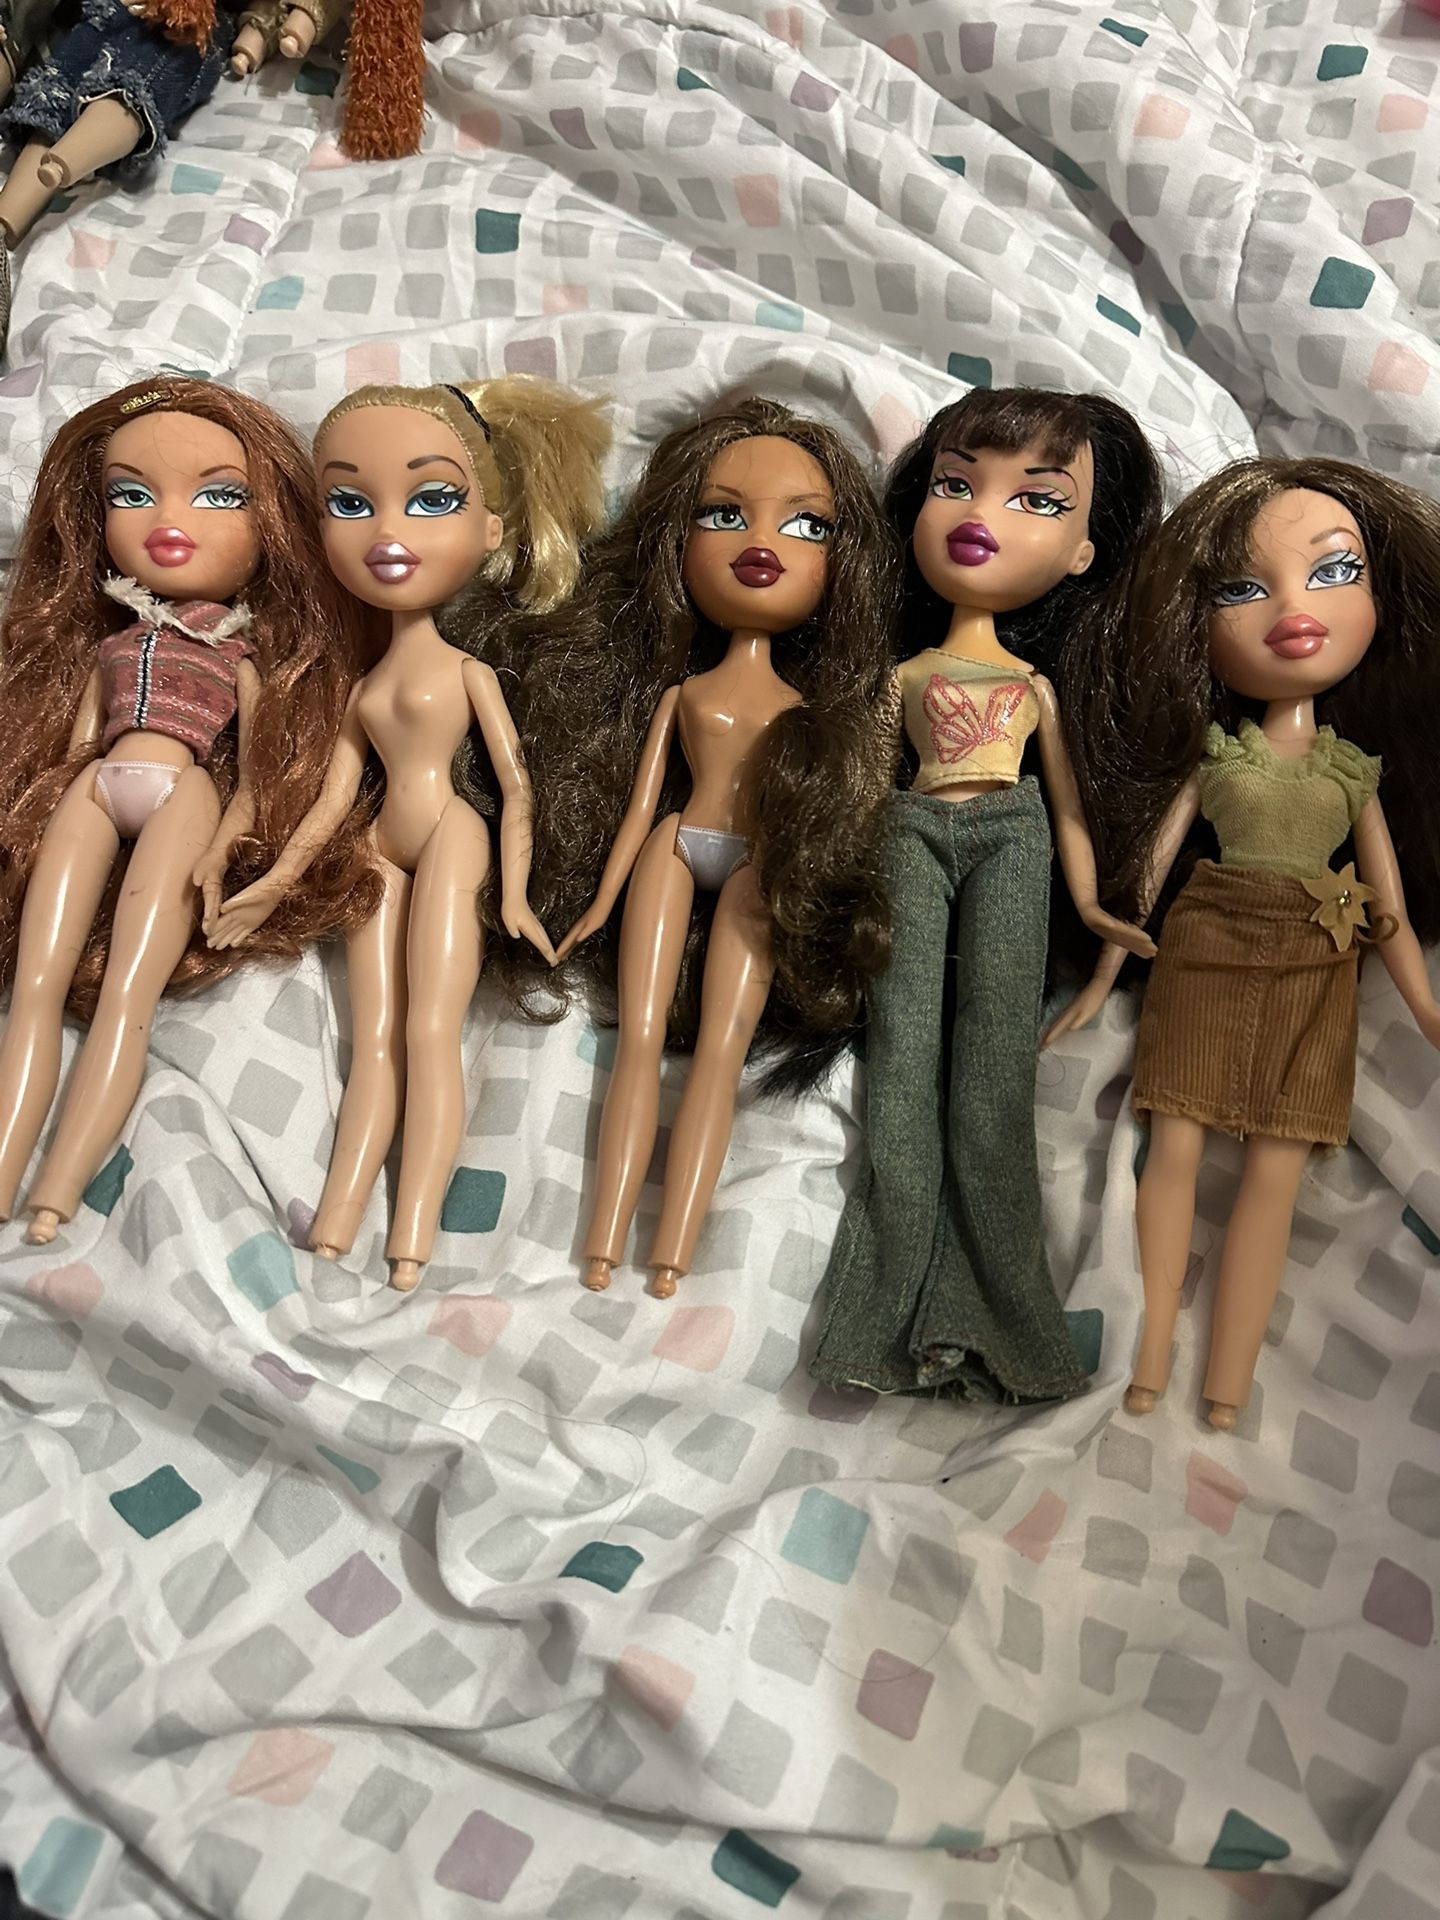 5 Bratz Girls Dolls